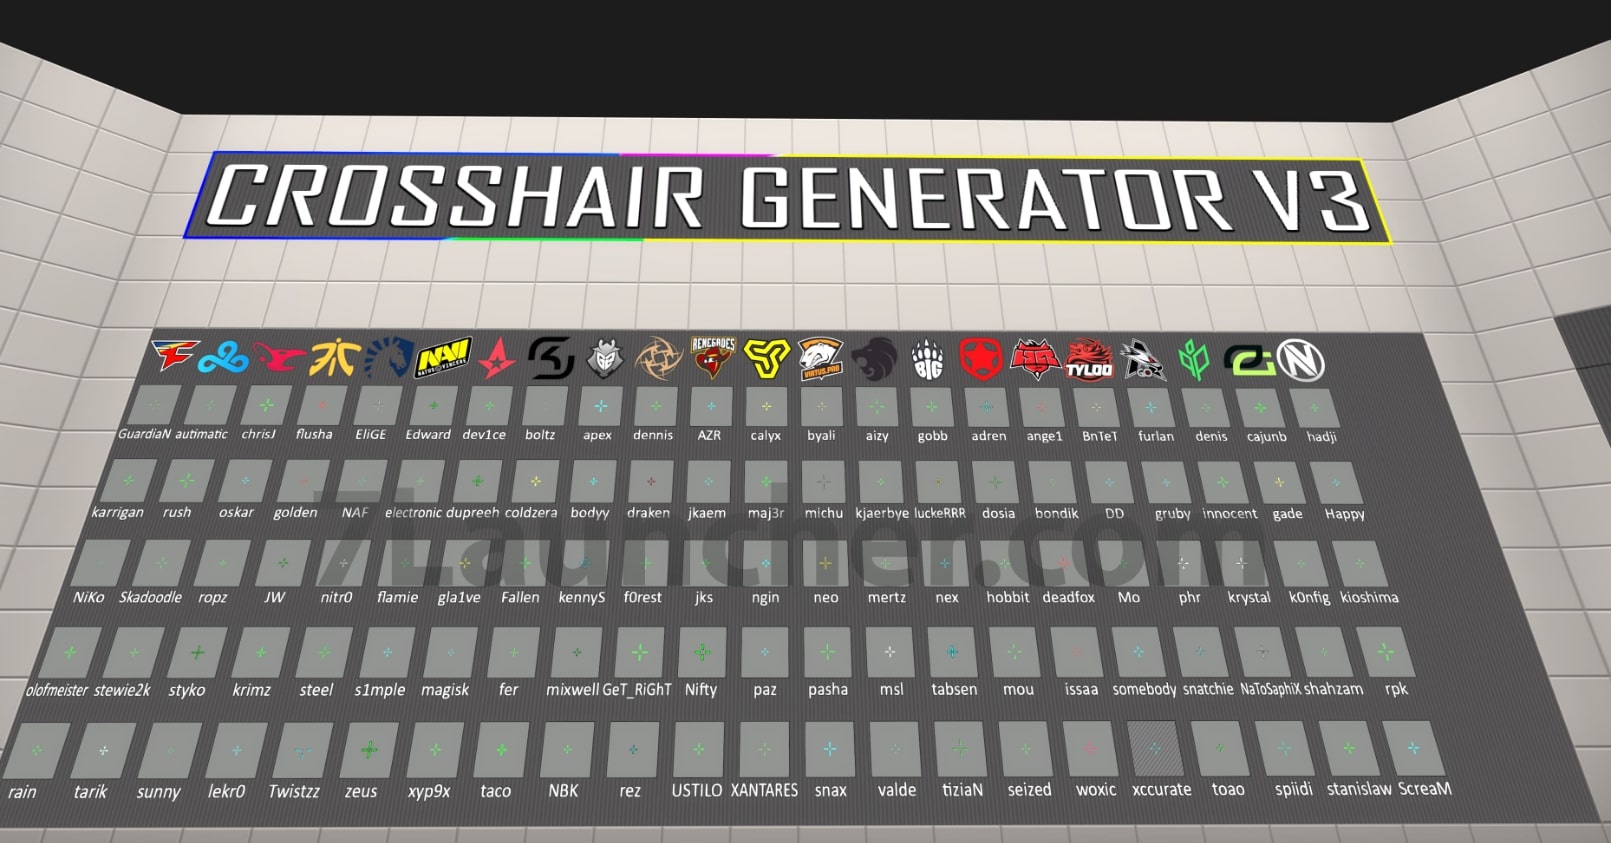 crashz' Crosshair Generator v3 steam workshop